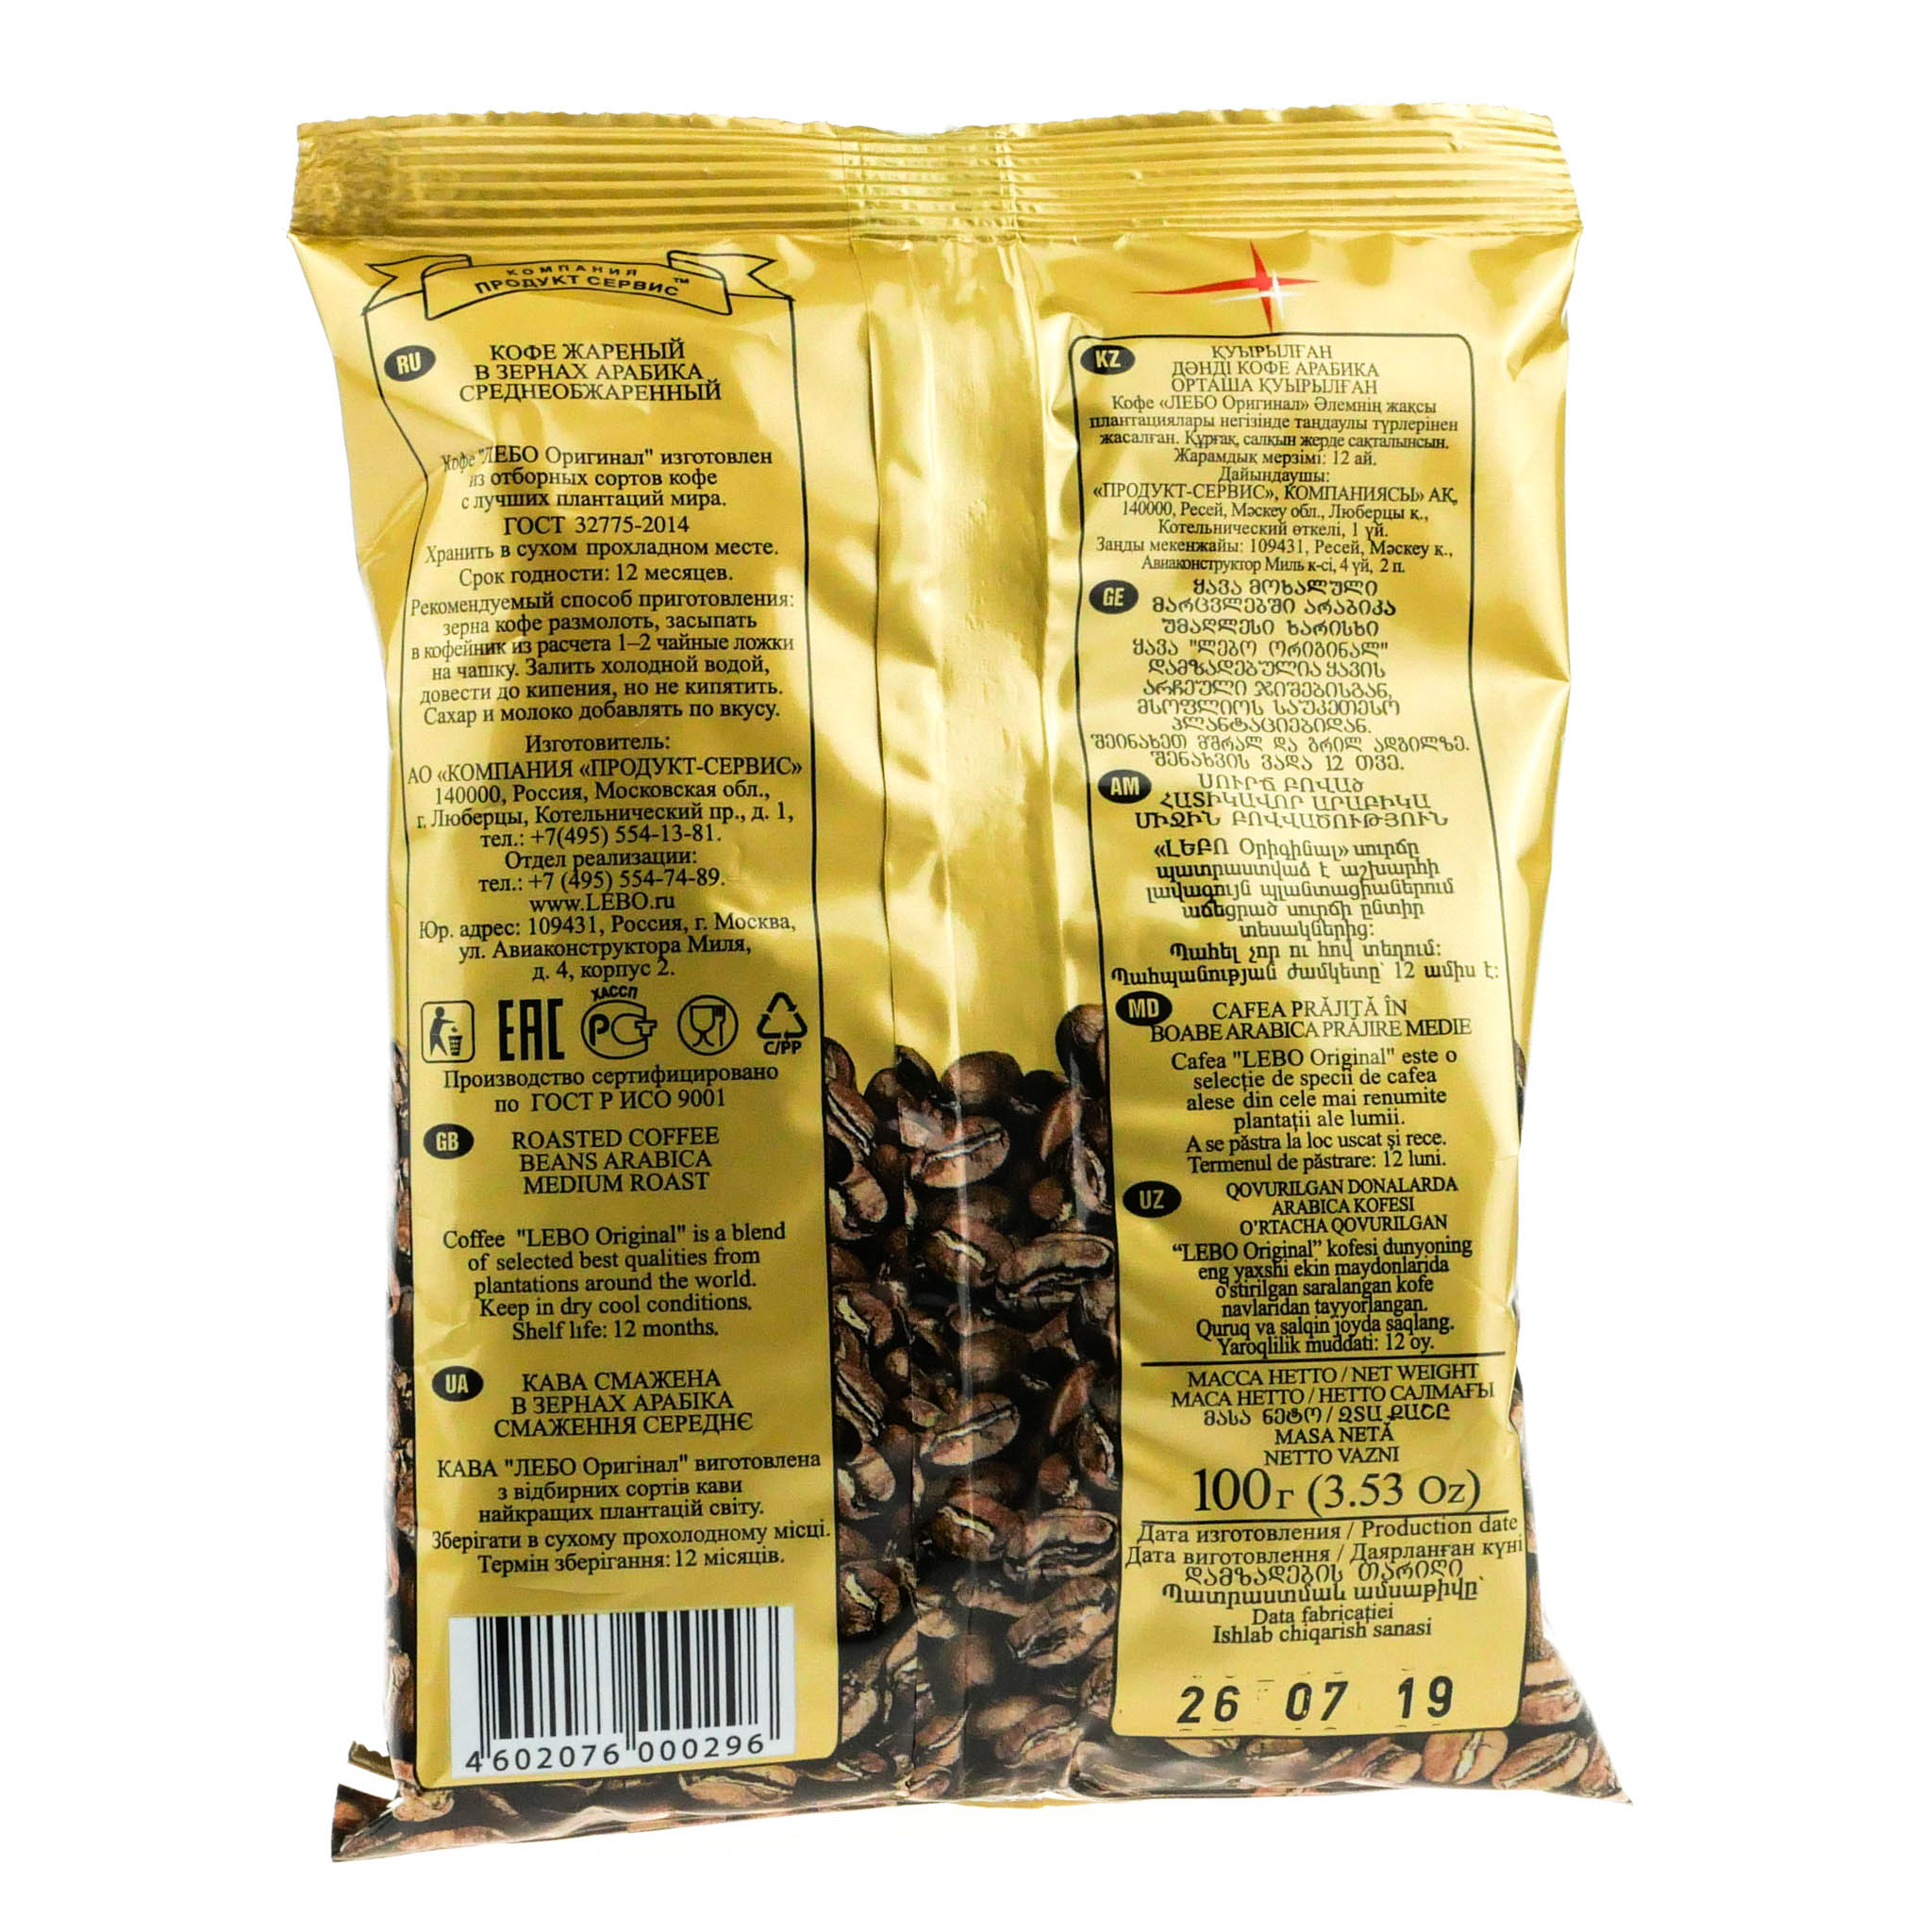 Топ кофе 2023. Лебо зерно "Colombia Tolima" арабика1000гр. Кофе принц Лебо Голд. Кофе Лебо Арабика. Кофе Лебо 100г оригинал зерно.